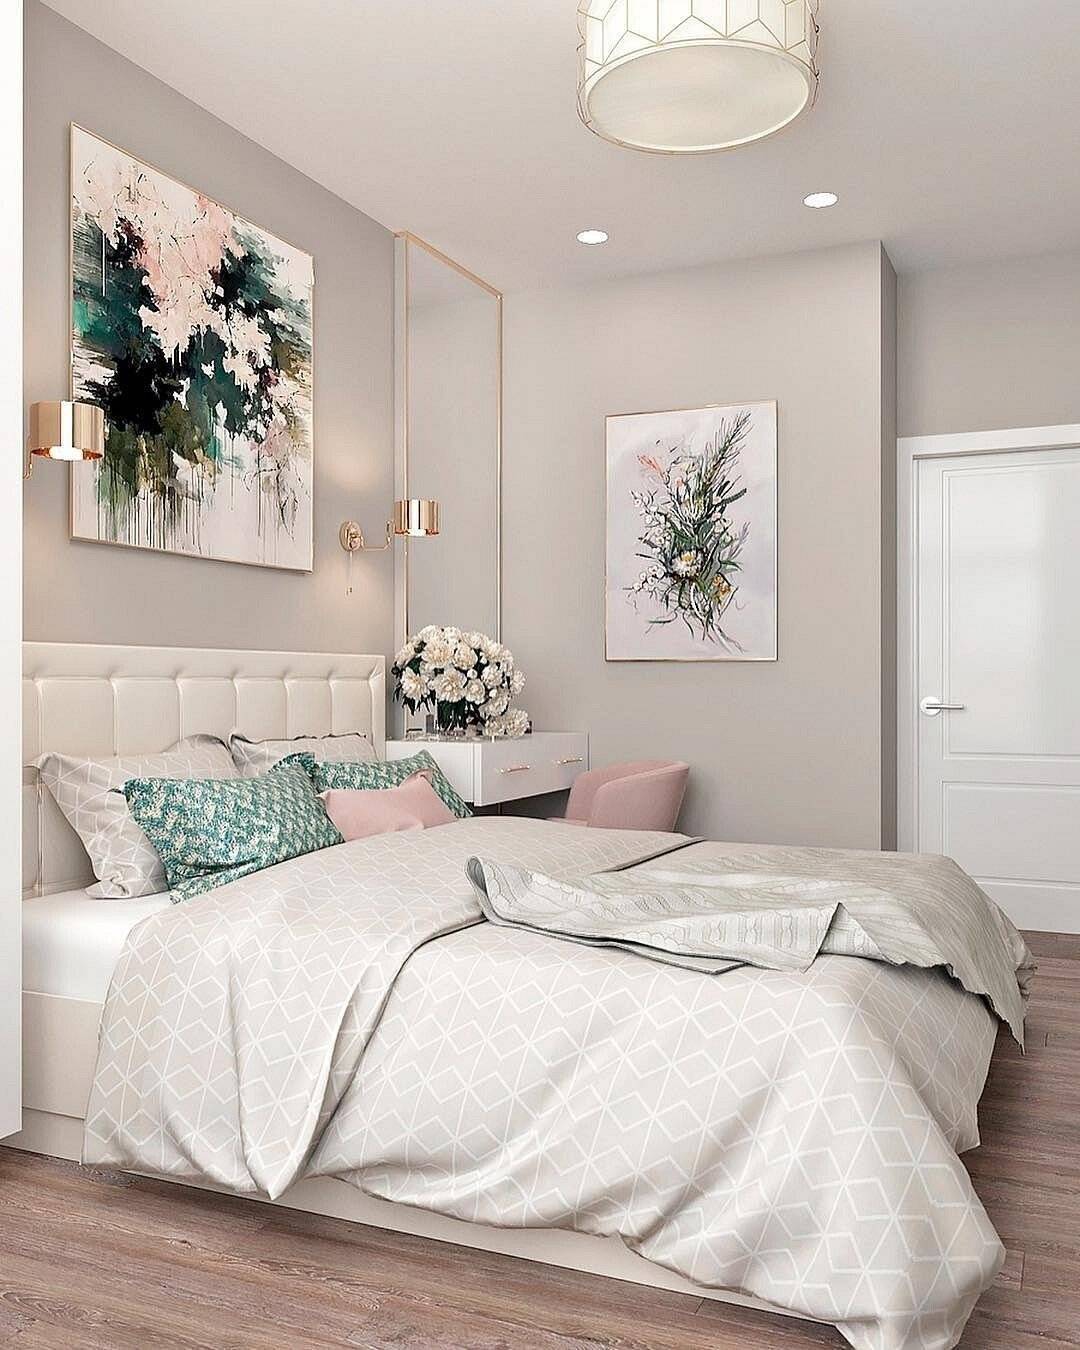 Пастельная спальня: примеры эксклюзивного дизайна спальни в пастельных тонах (154 фото)